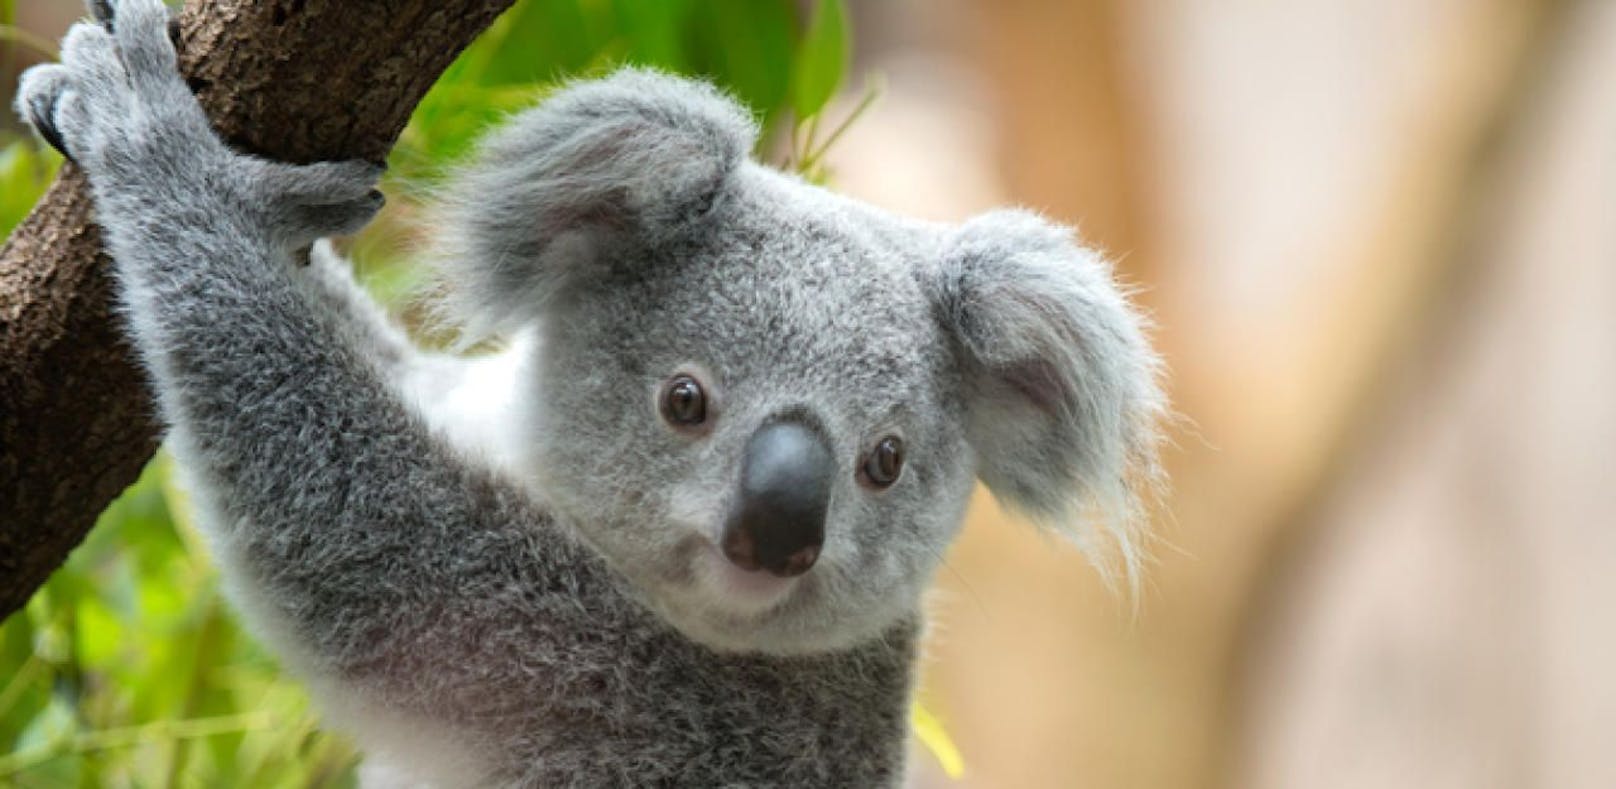 Australiens Koalas sind in Gefahr: Eine Geschlechtskrankheit bedroht die Populationen.&nbsp;